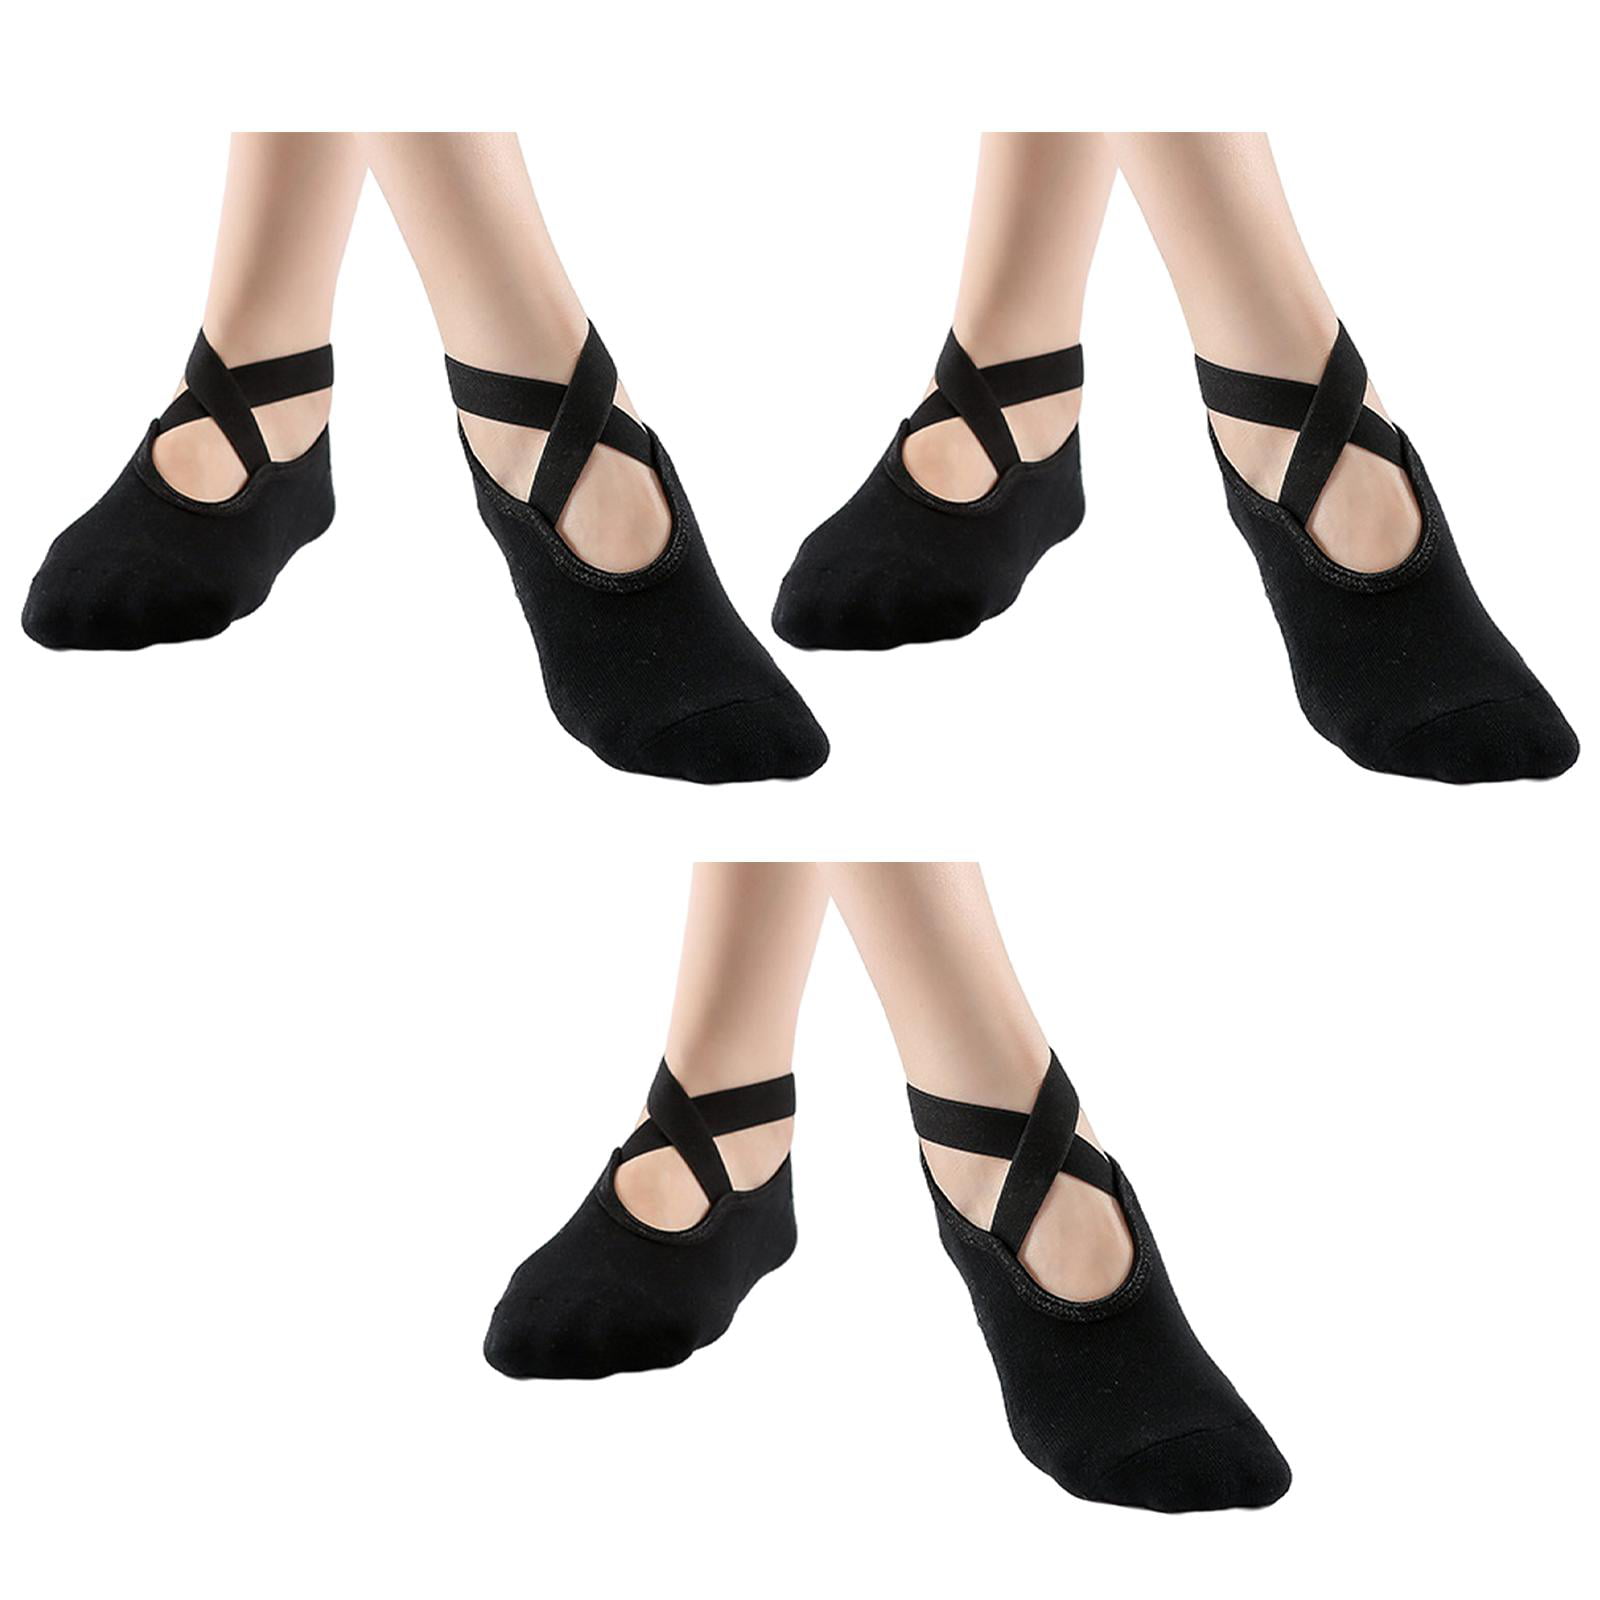 Dance Socks Over Shoes Dance Shoe Covers Sports Socks on Carpet Floors Women's Yoga Socks for Dancing Ballet Outdoors 